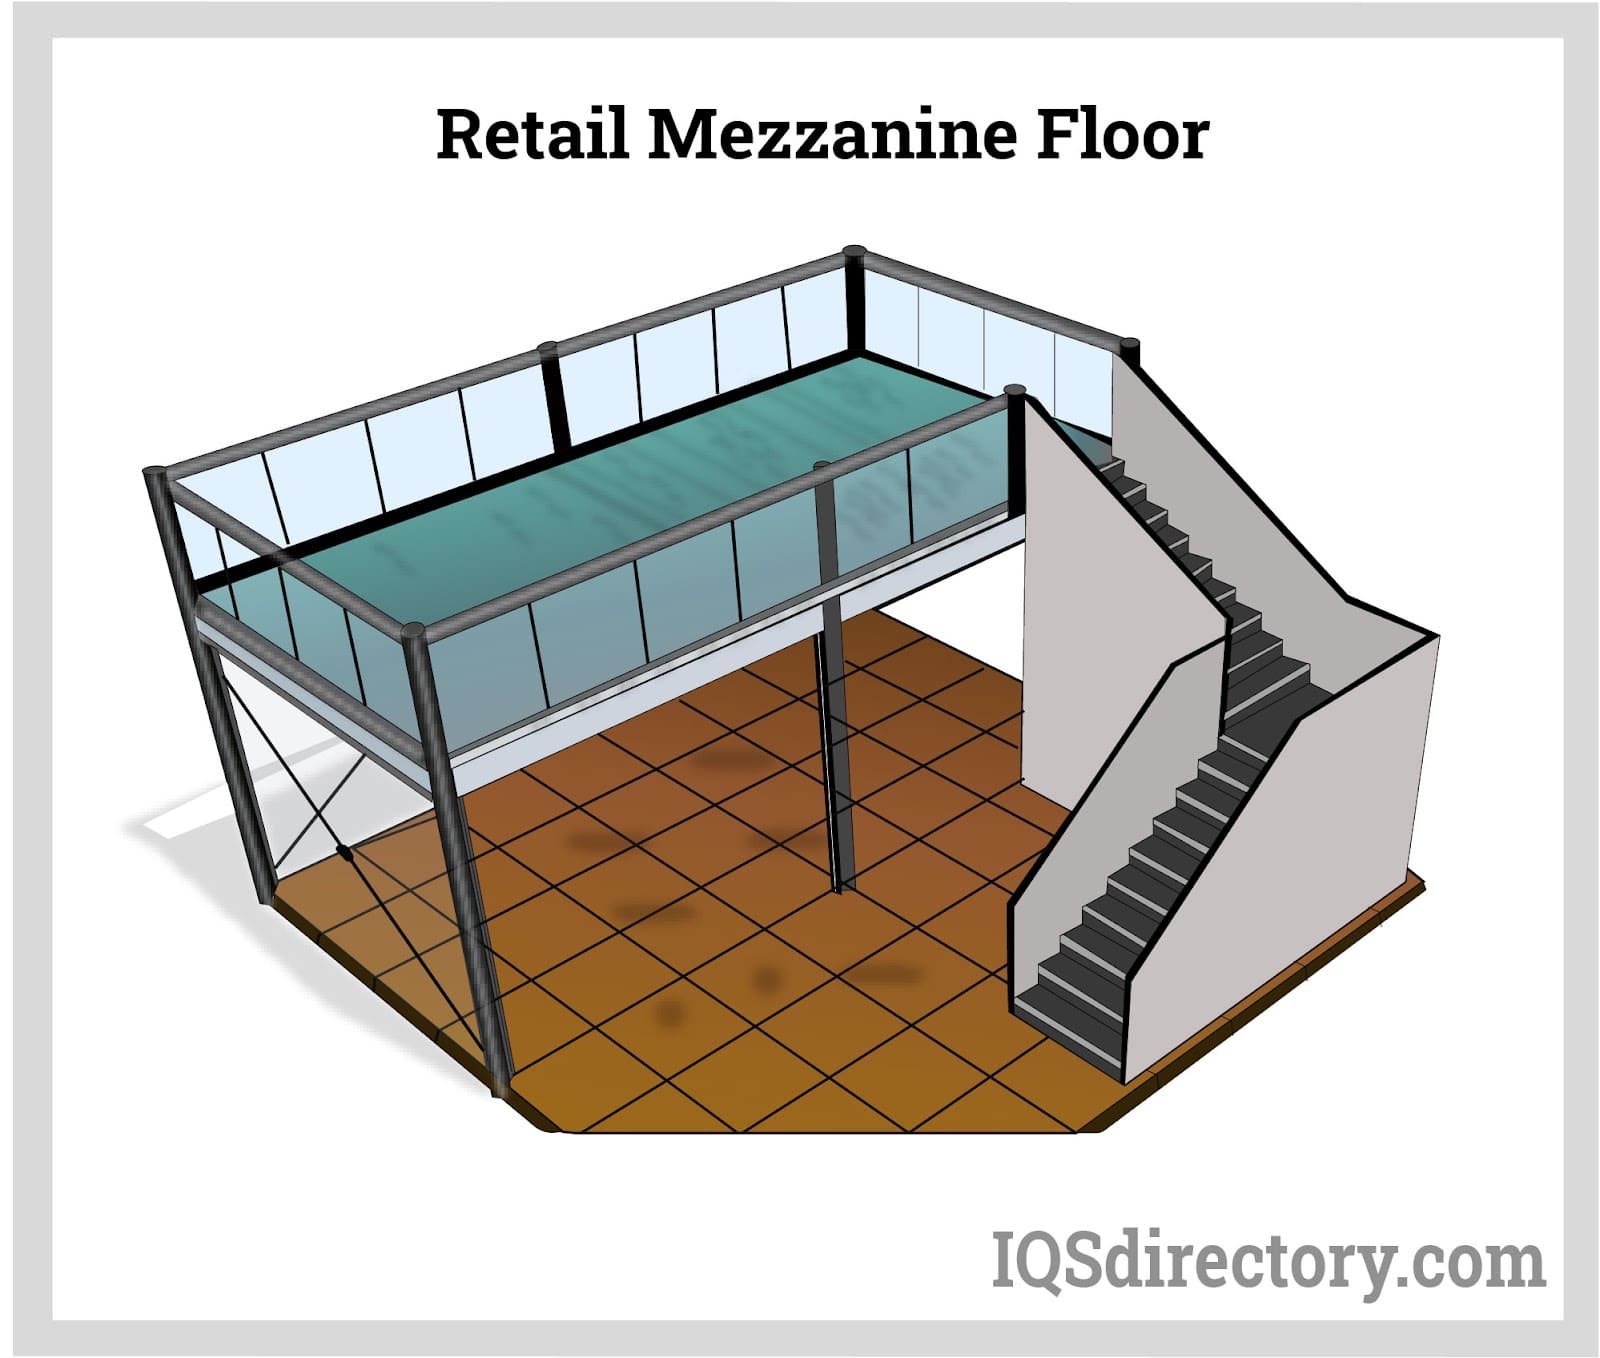 Retail Mezzanine Floor